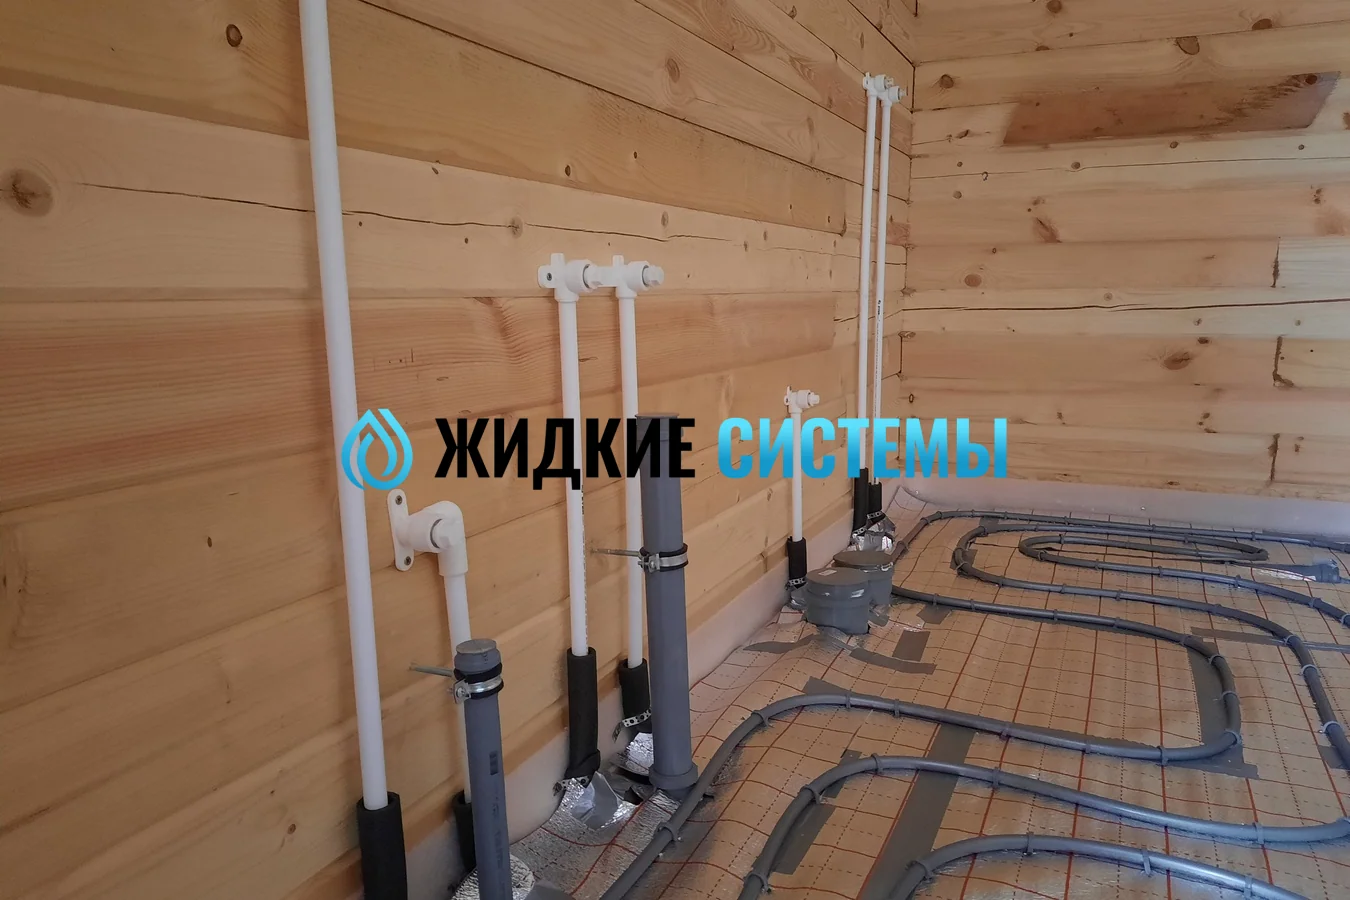 Монтаж водоснабжения в ванной комнате для деревянного дома